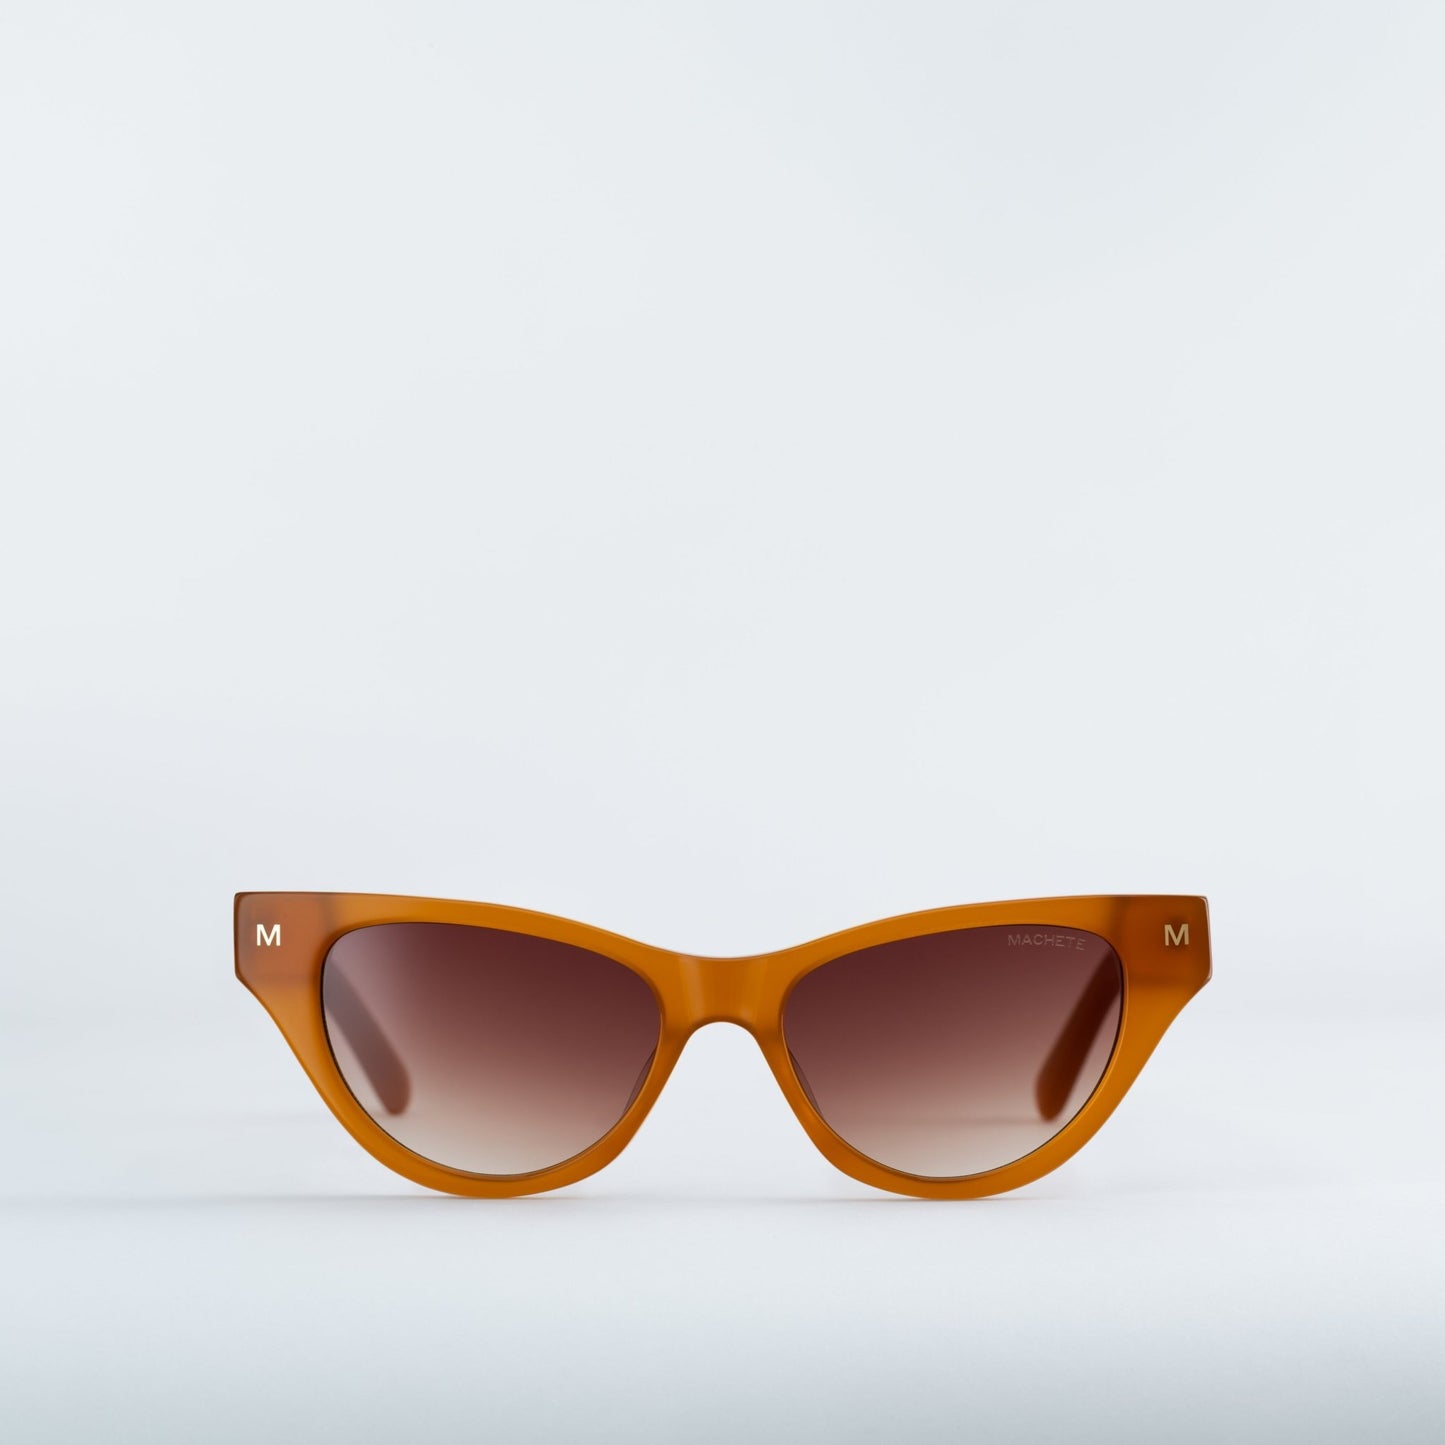 MACHETE Suzy Sunglasses in Cognac